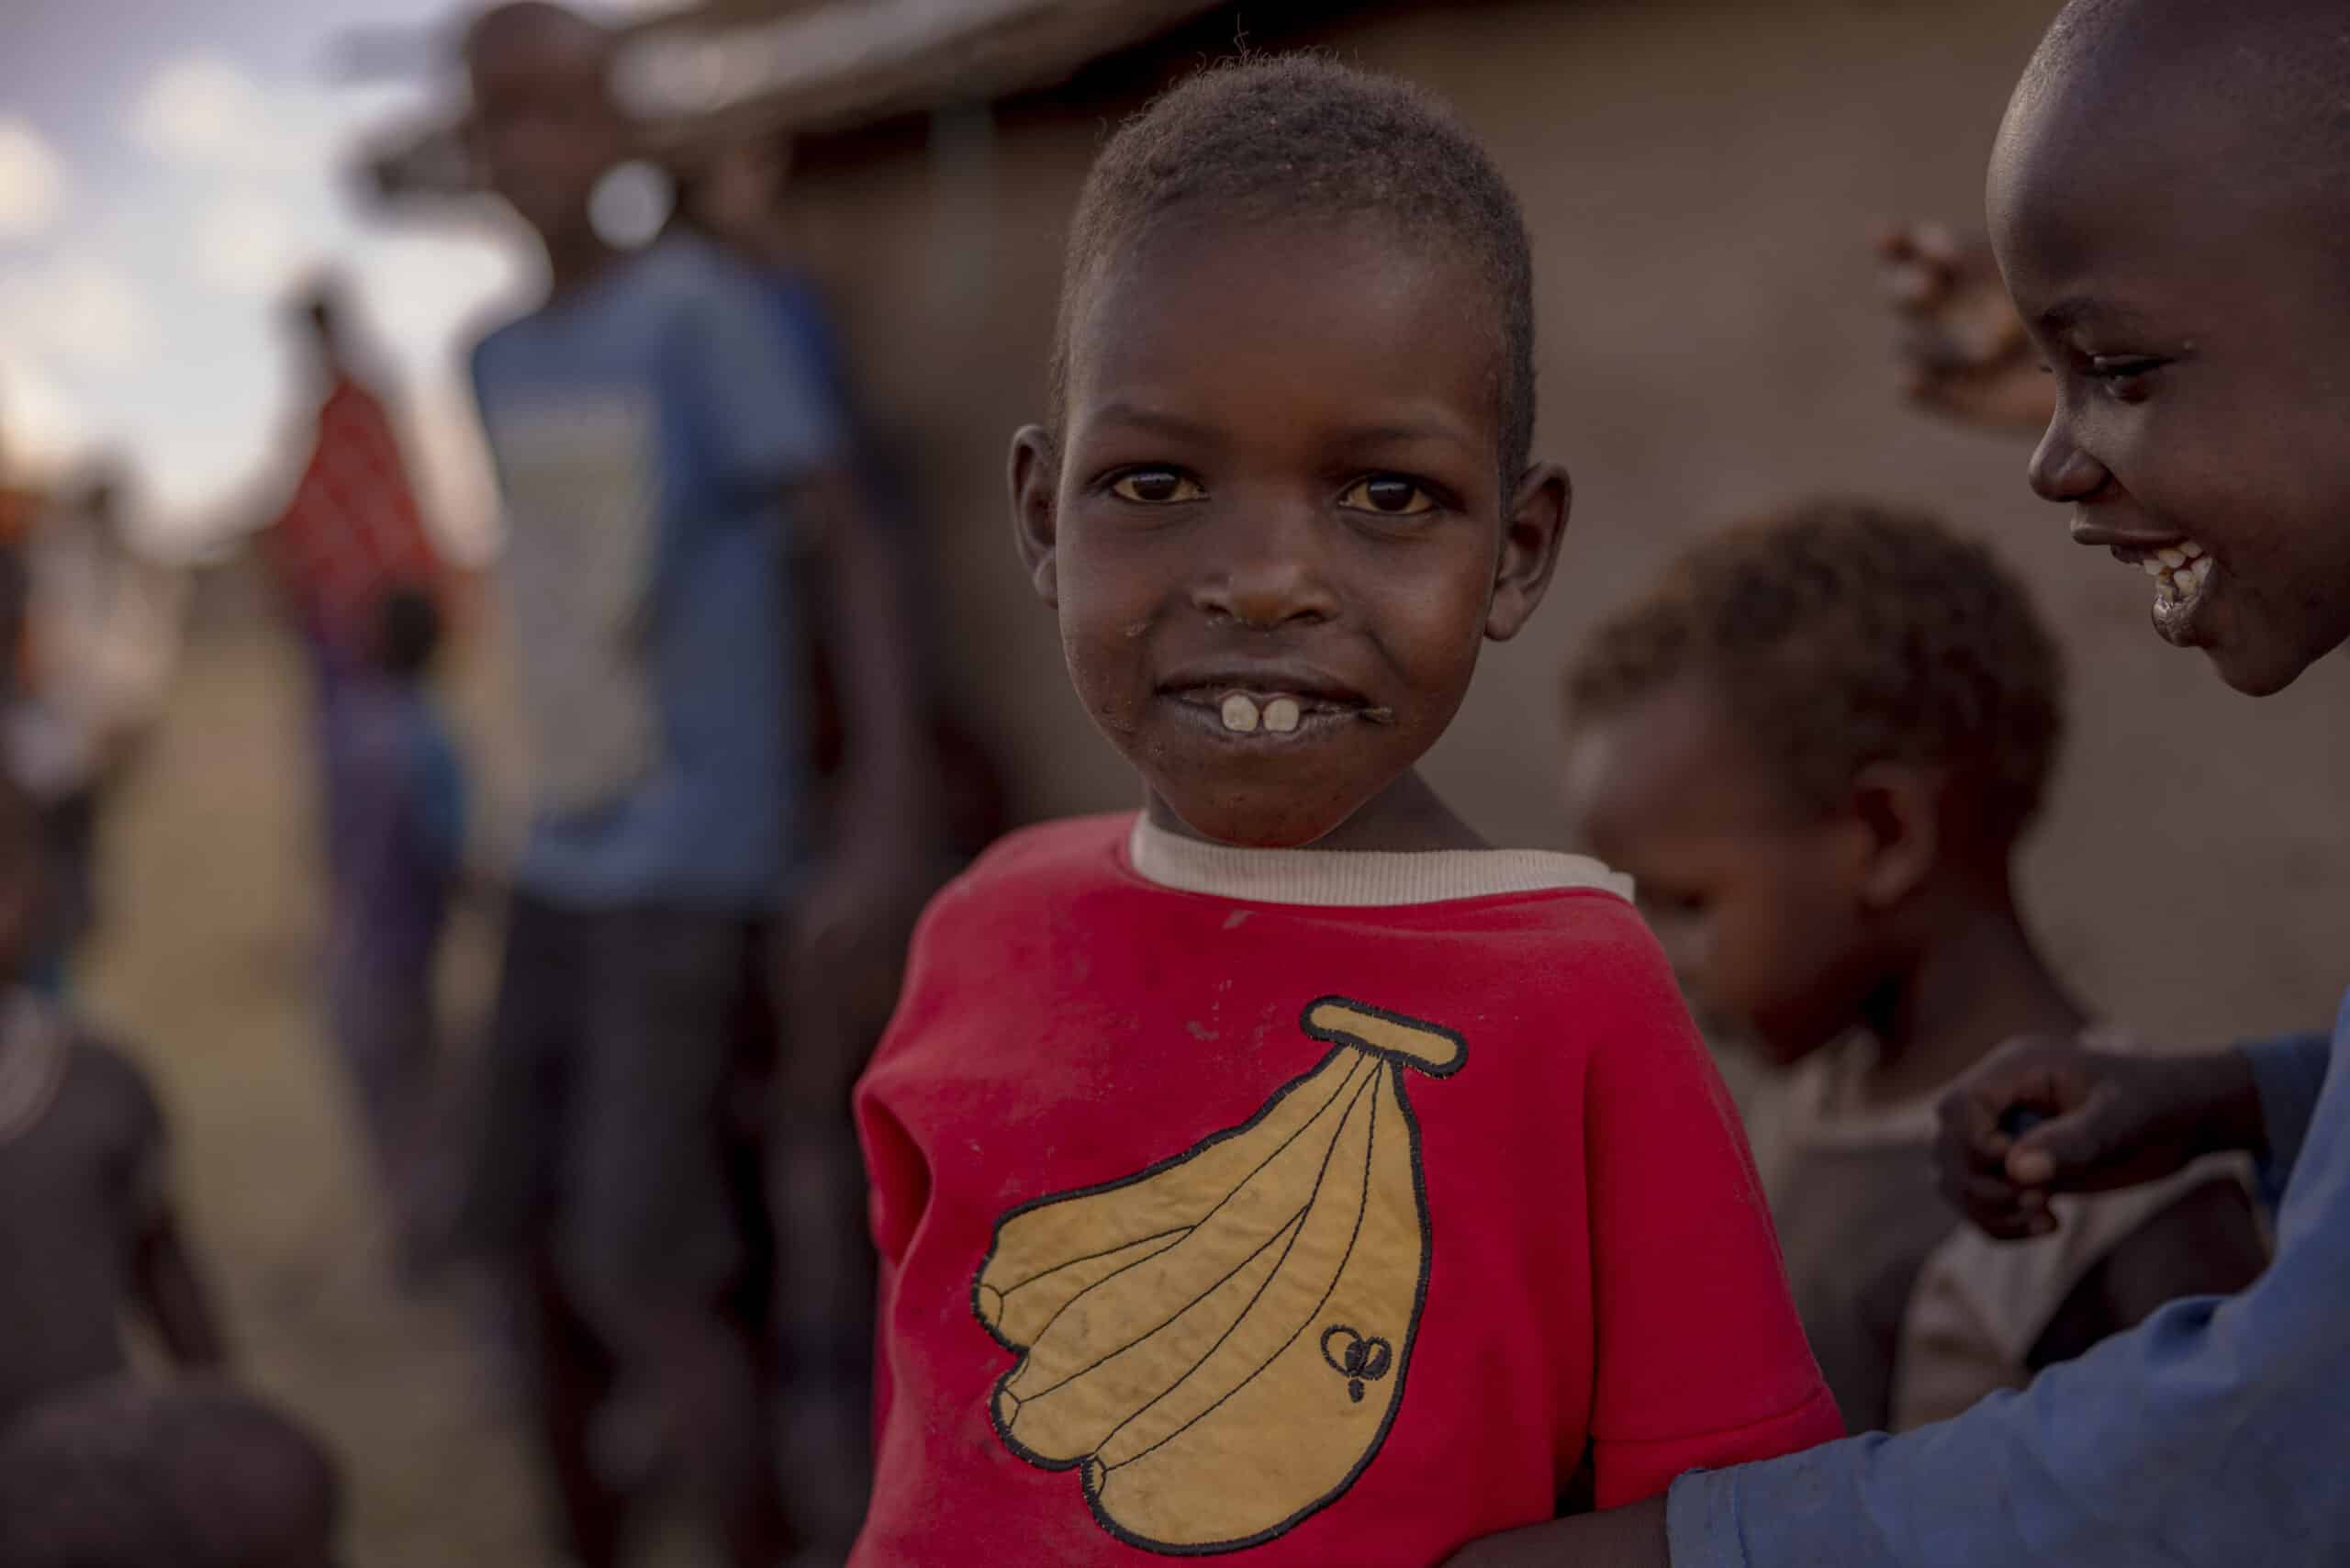 Ein kleiner Junge in einem roten Hemd mit Bananenaufdruck lächelt breit in die Kamera. Er steht zwischen anderen Kindern und einem Erwachsenen in einer ländlichen Umgebung. © Fotografie Tomas Rodriguez